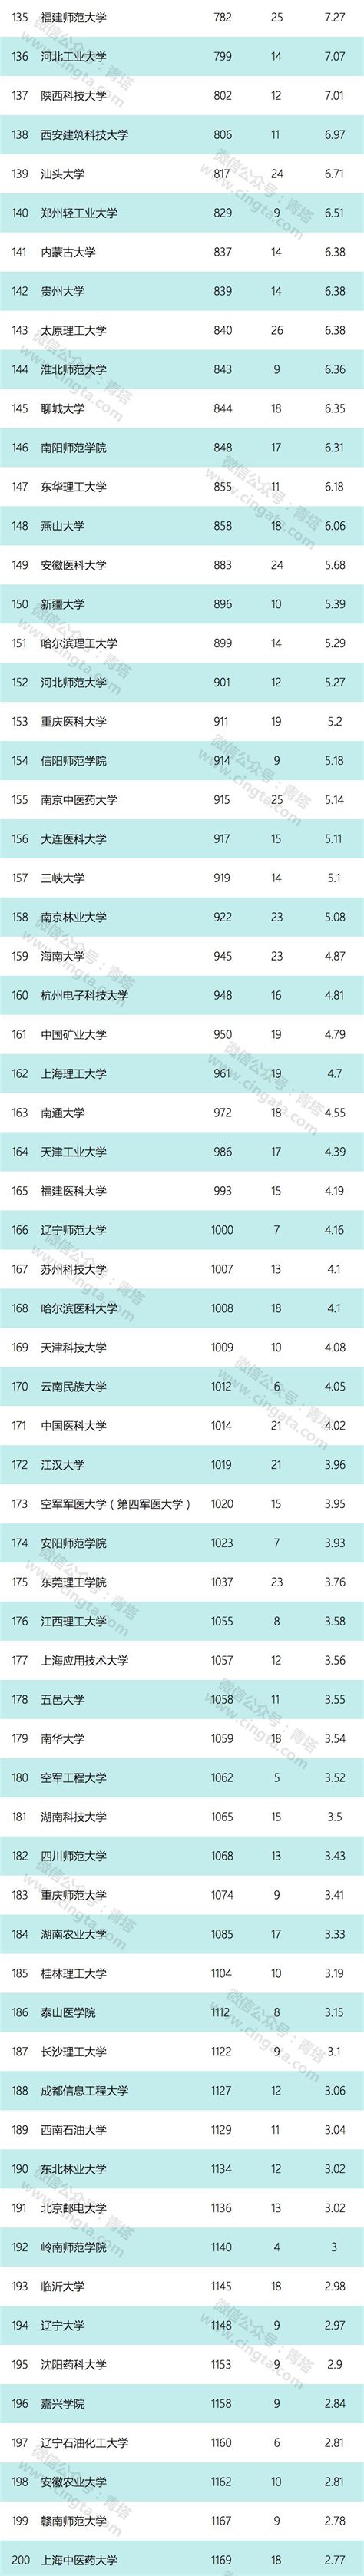 2017年最新自然指数出炉|中国高校TOP100_中国聚合物网科教新闻